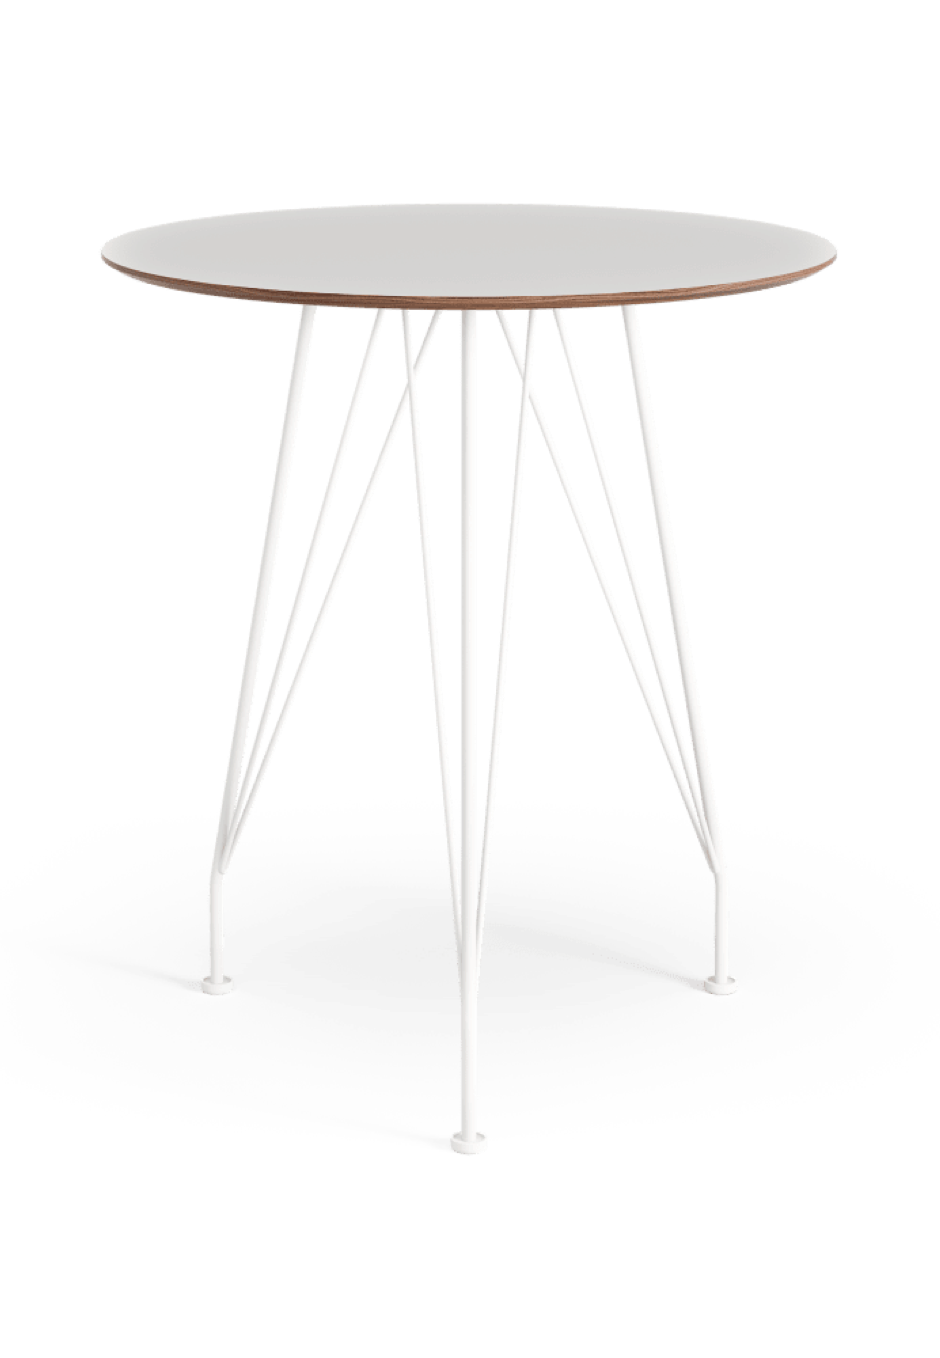 Tables et chaises Désirée  Swedese  Yngve Ekström, 1954 